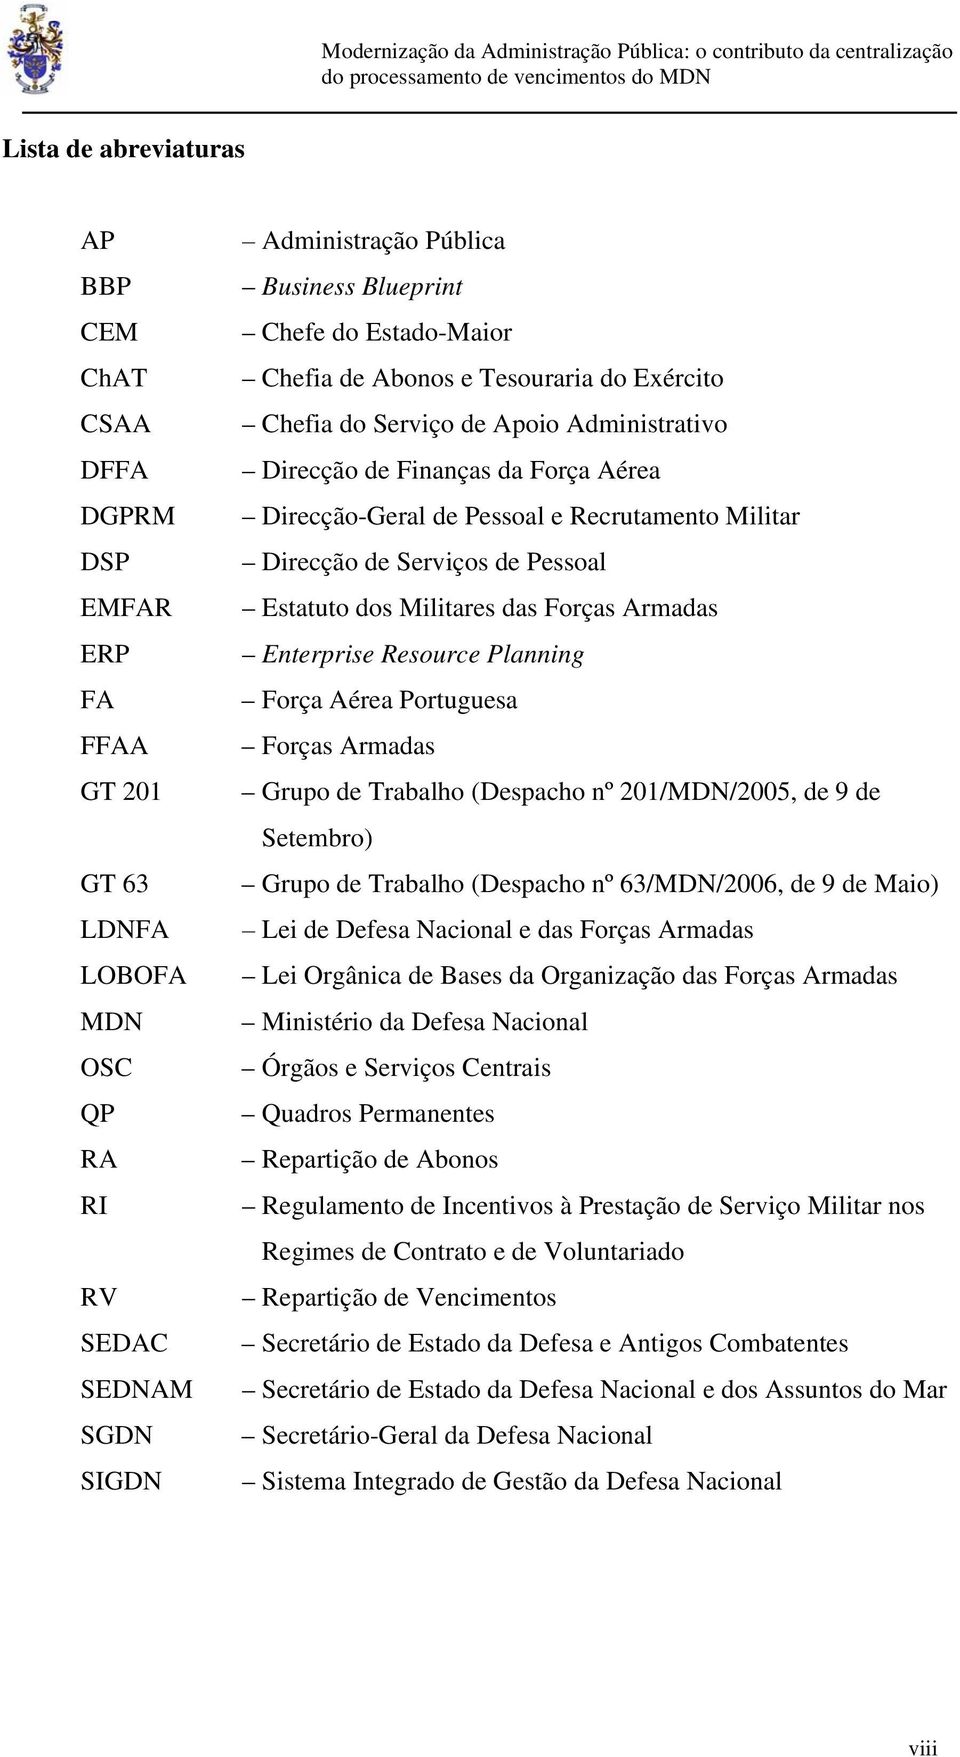 Serviços de Pessoal Estatuto dos Militares das Forças Armadas Enterprise Resource Planning Força Aérea Portuguesa Forças Armadas Grupo de Trabalho (Despacho nº 201/MDN/2005, de 9 de Setembro) Grupo